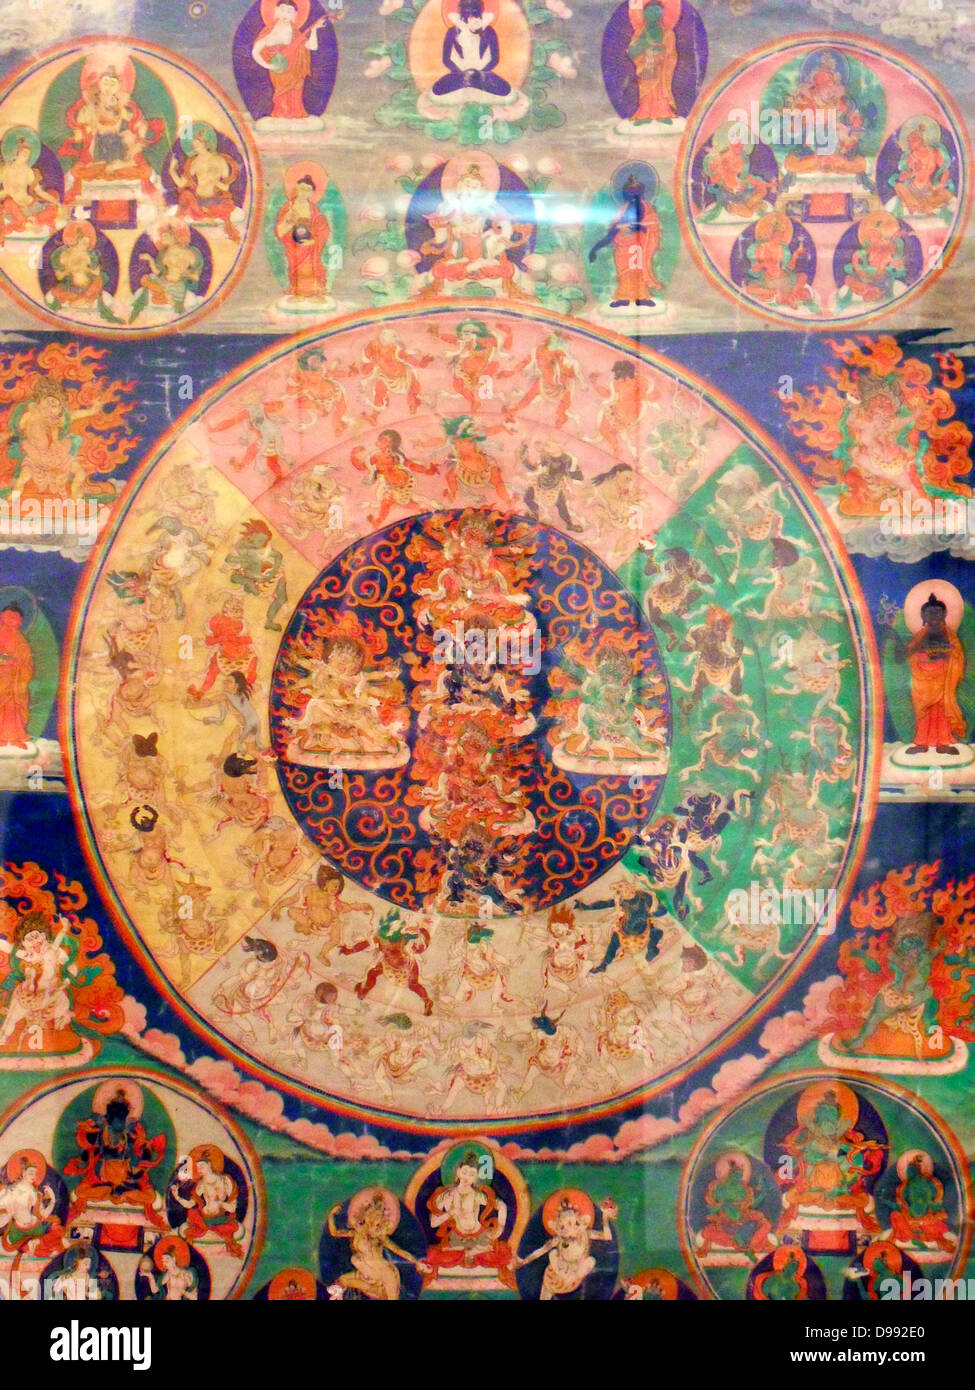 Sur ce divinités se sont réunis pour regarder thanka apparraissent féroce que le défunt durant le Bardo. 19ème Mandala toile (peinture) du Tibet Banque D'Images